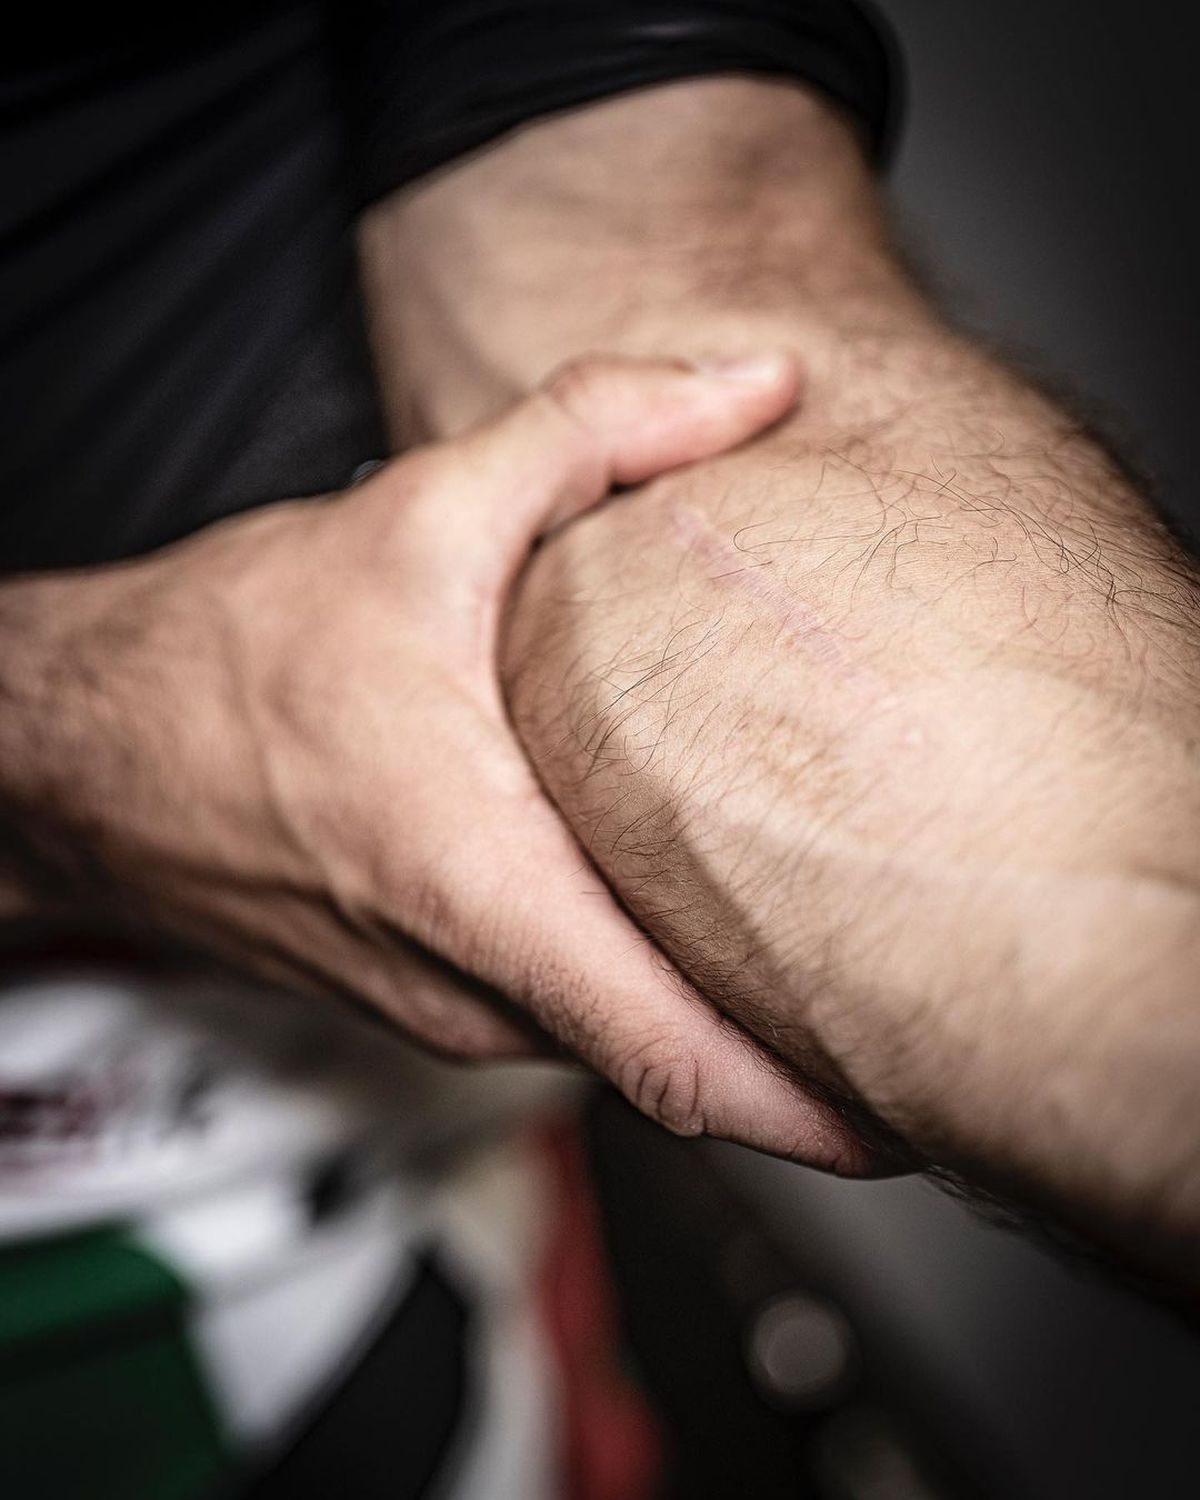 Durere și artă » Piloții din MotoGP așa cum nu i-ai mai văzut » S-au dezbrăcat și își arată cicatricile șocante, dar și tatuajele spectaculoase